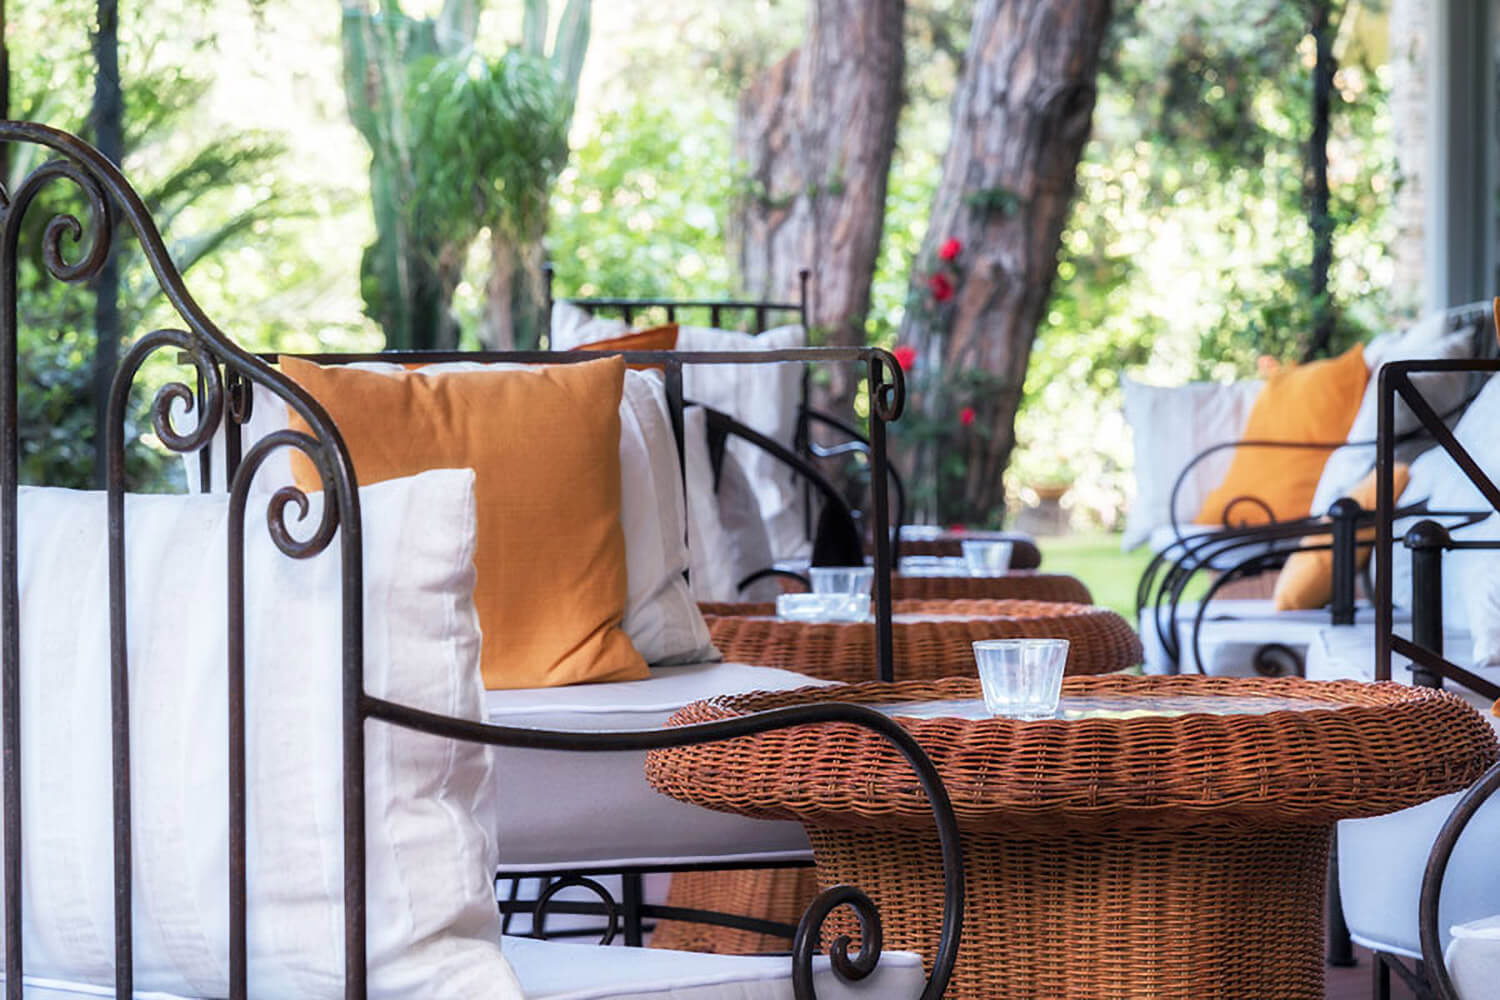 Hotel Andreaneri Marina di Pietrasanta - dettaglio tavolini giardino per relax